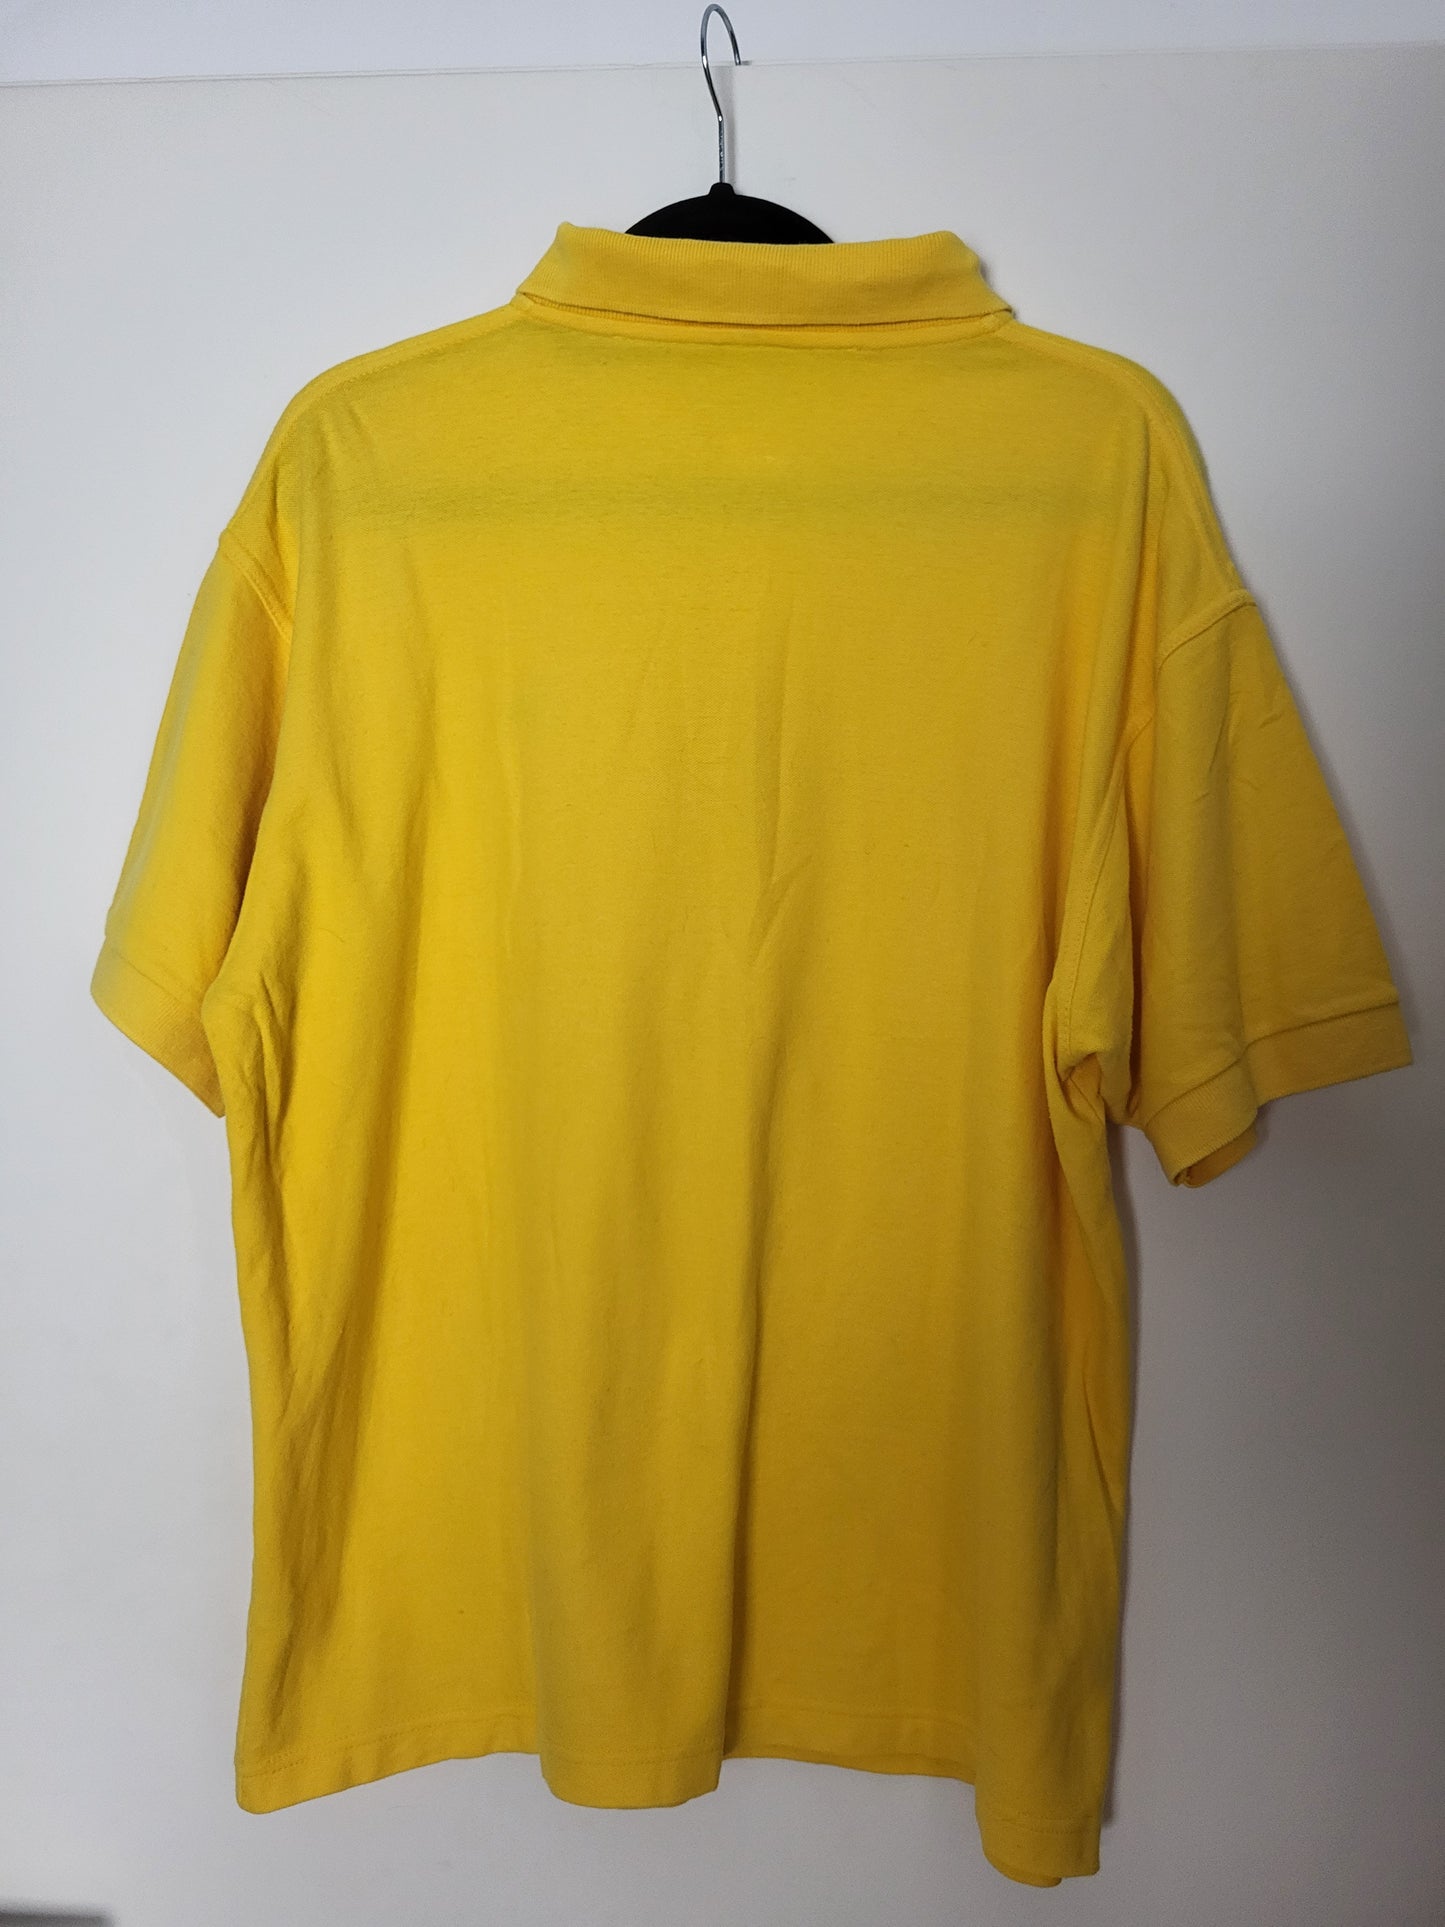 KENZO - Poloshirt - Klassisch - Gelb - Herren - XL